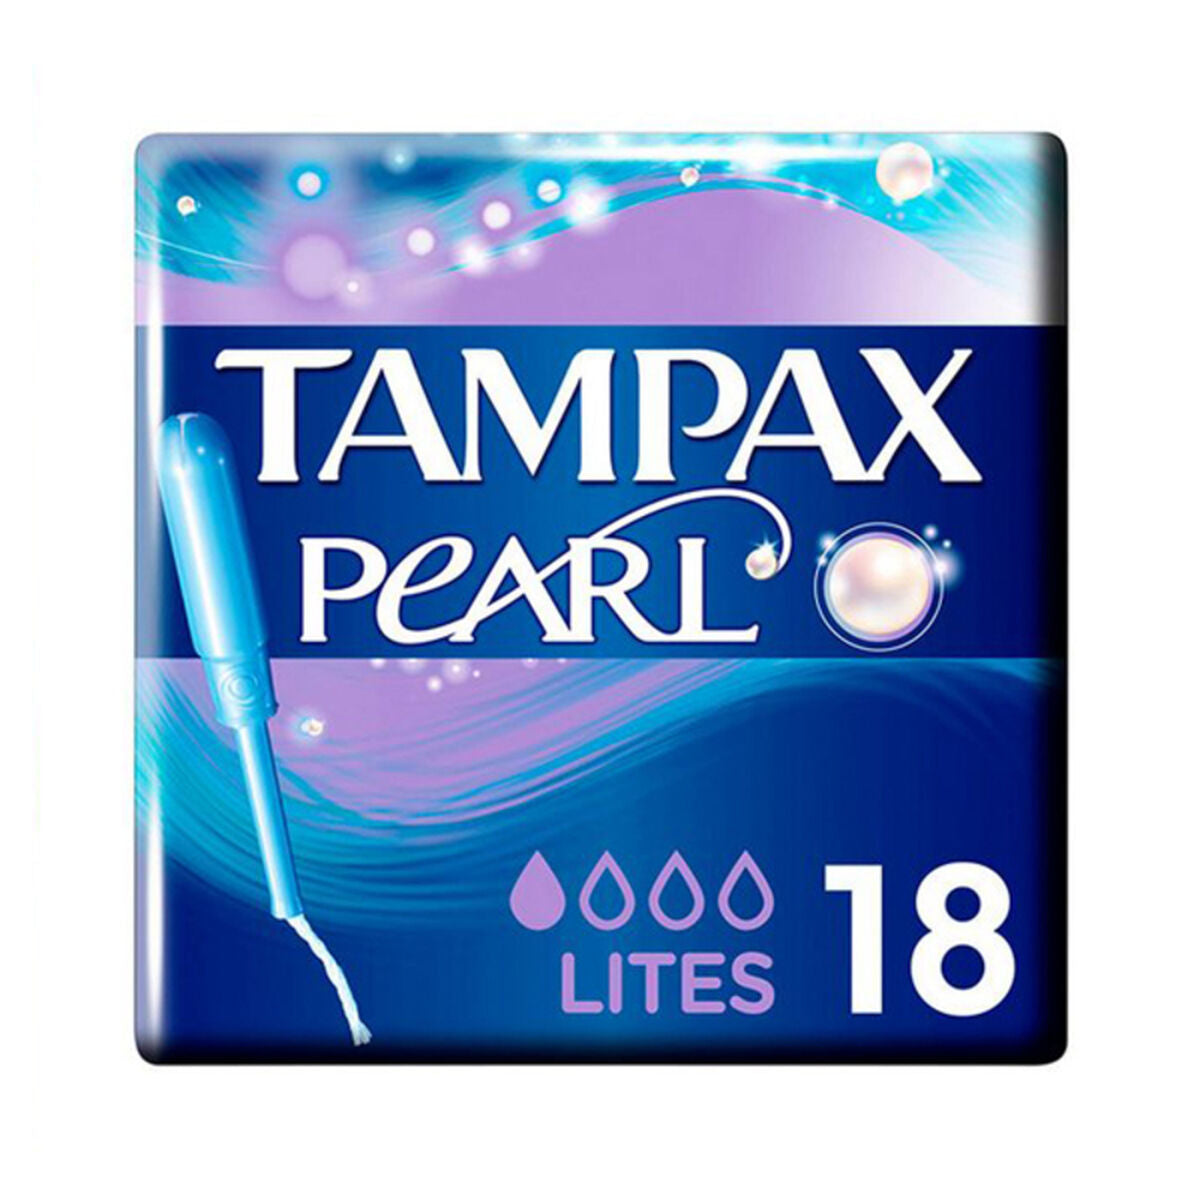 Πακέτο των ταμπόν Pearl Lites Tampax (18 UDS)